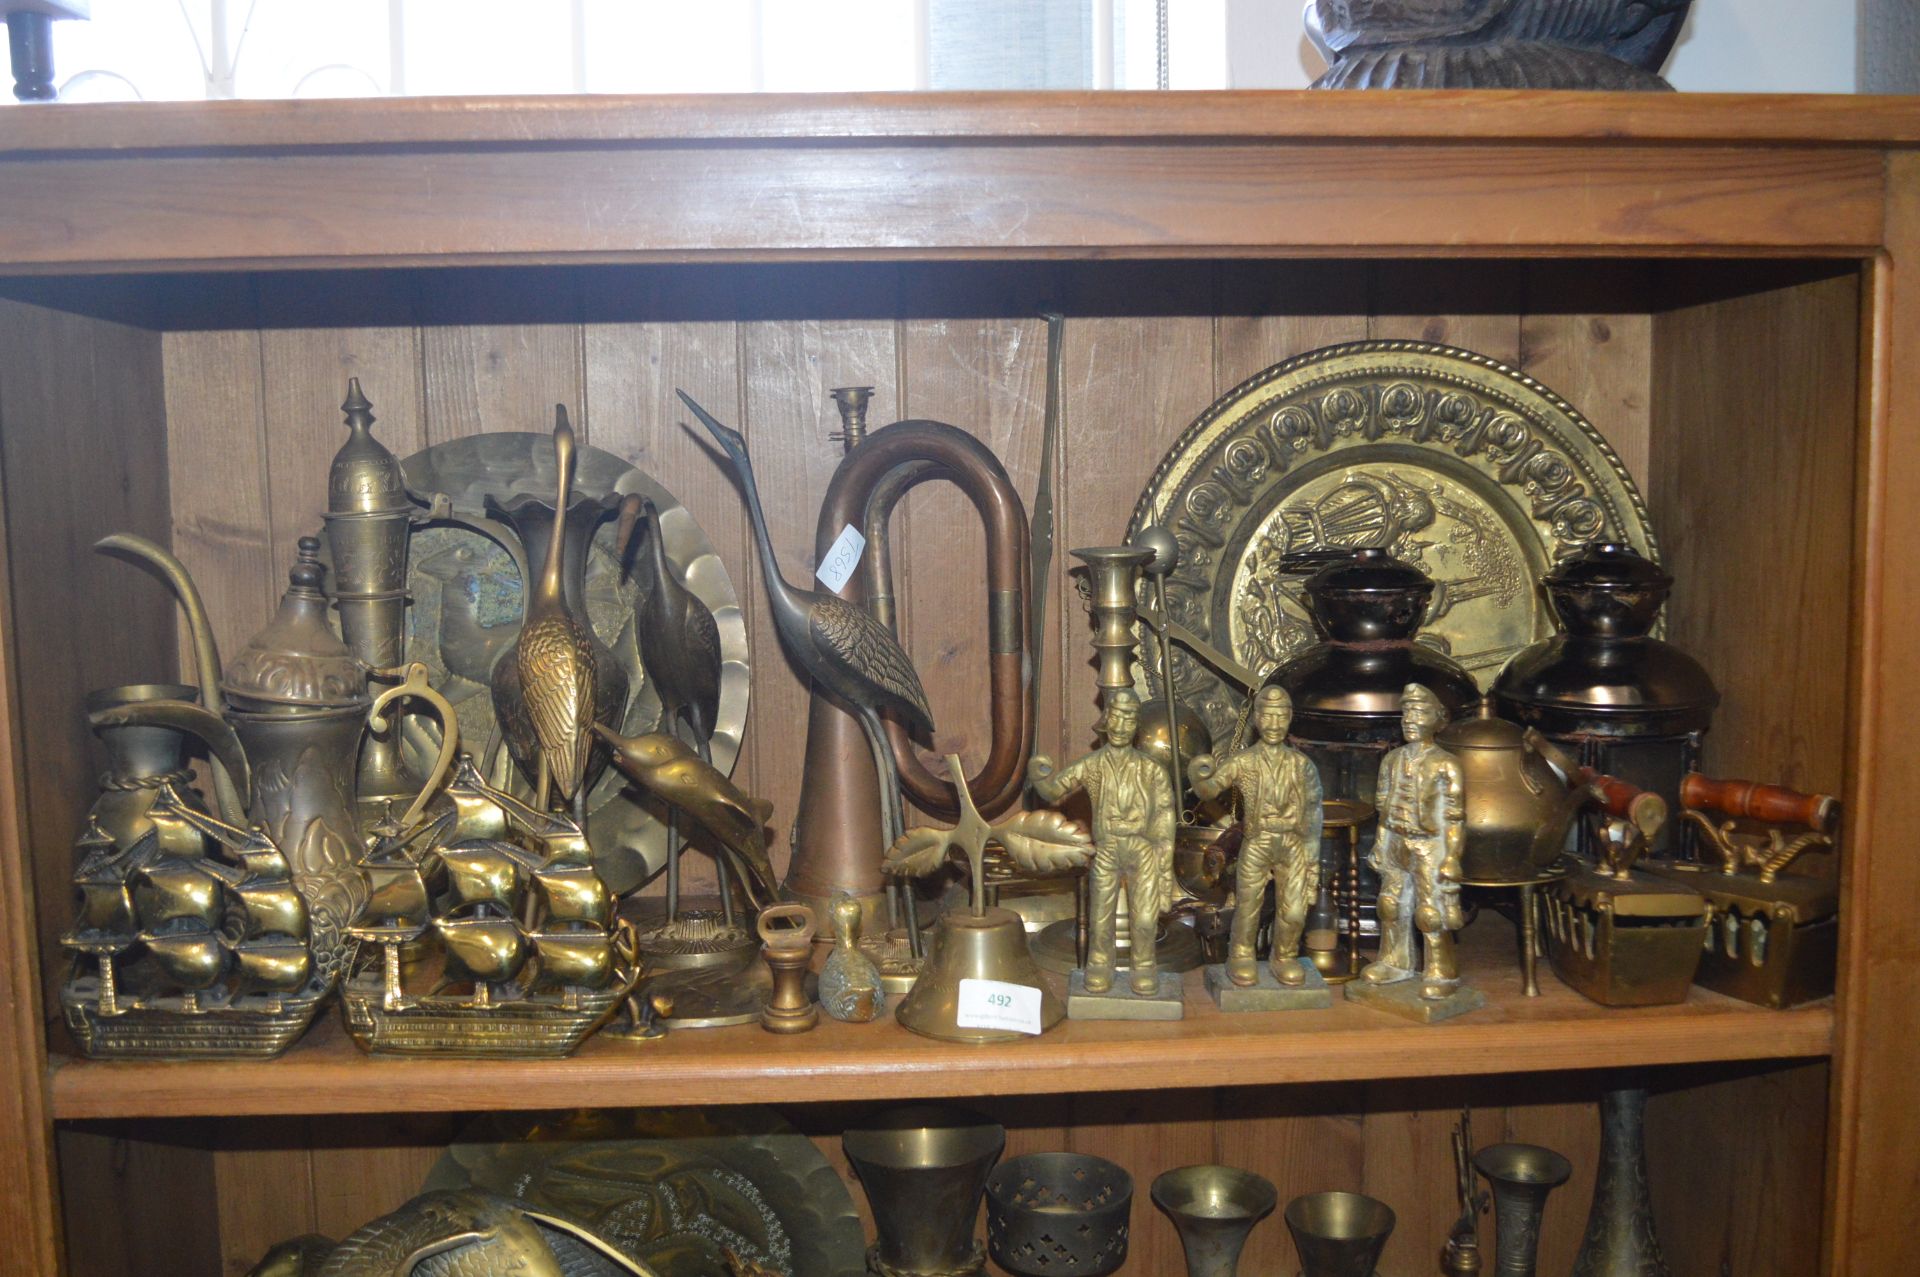 Shelf of Assorted Brass Ornaments, Trays, etc.